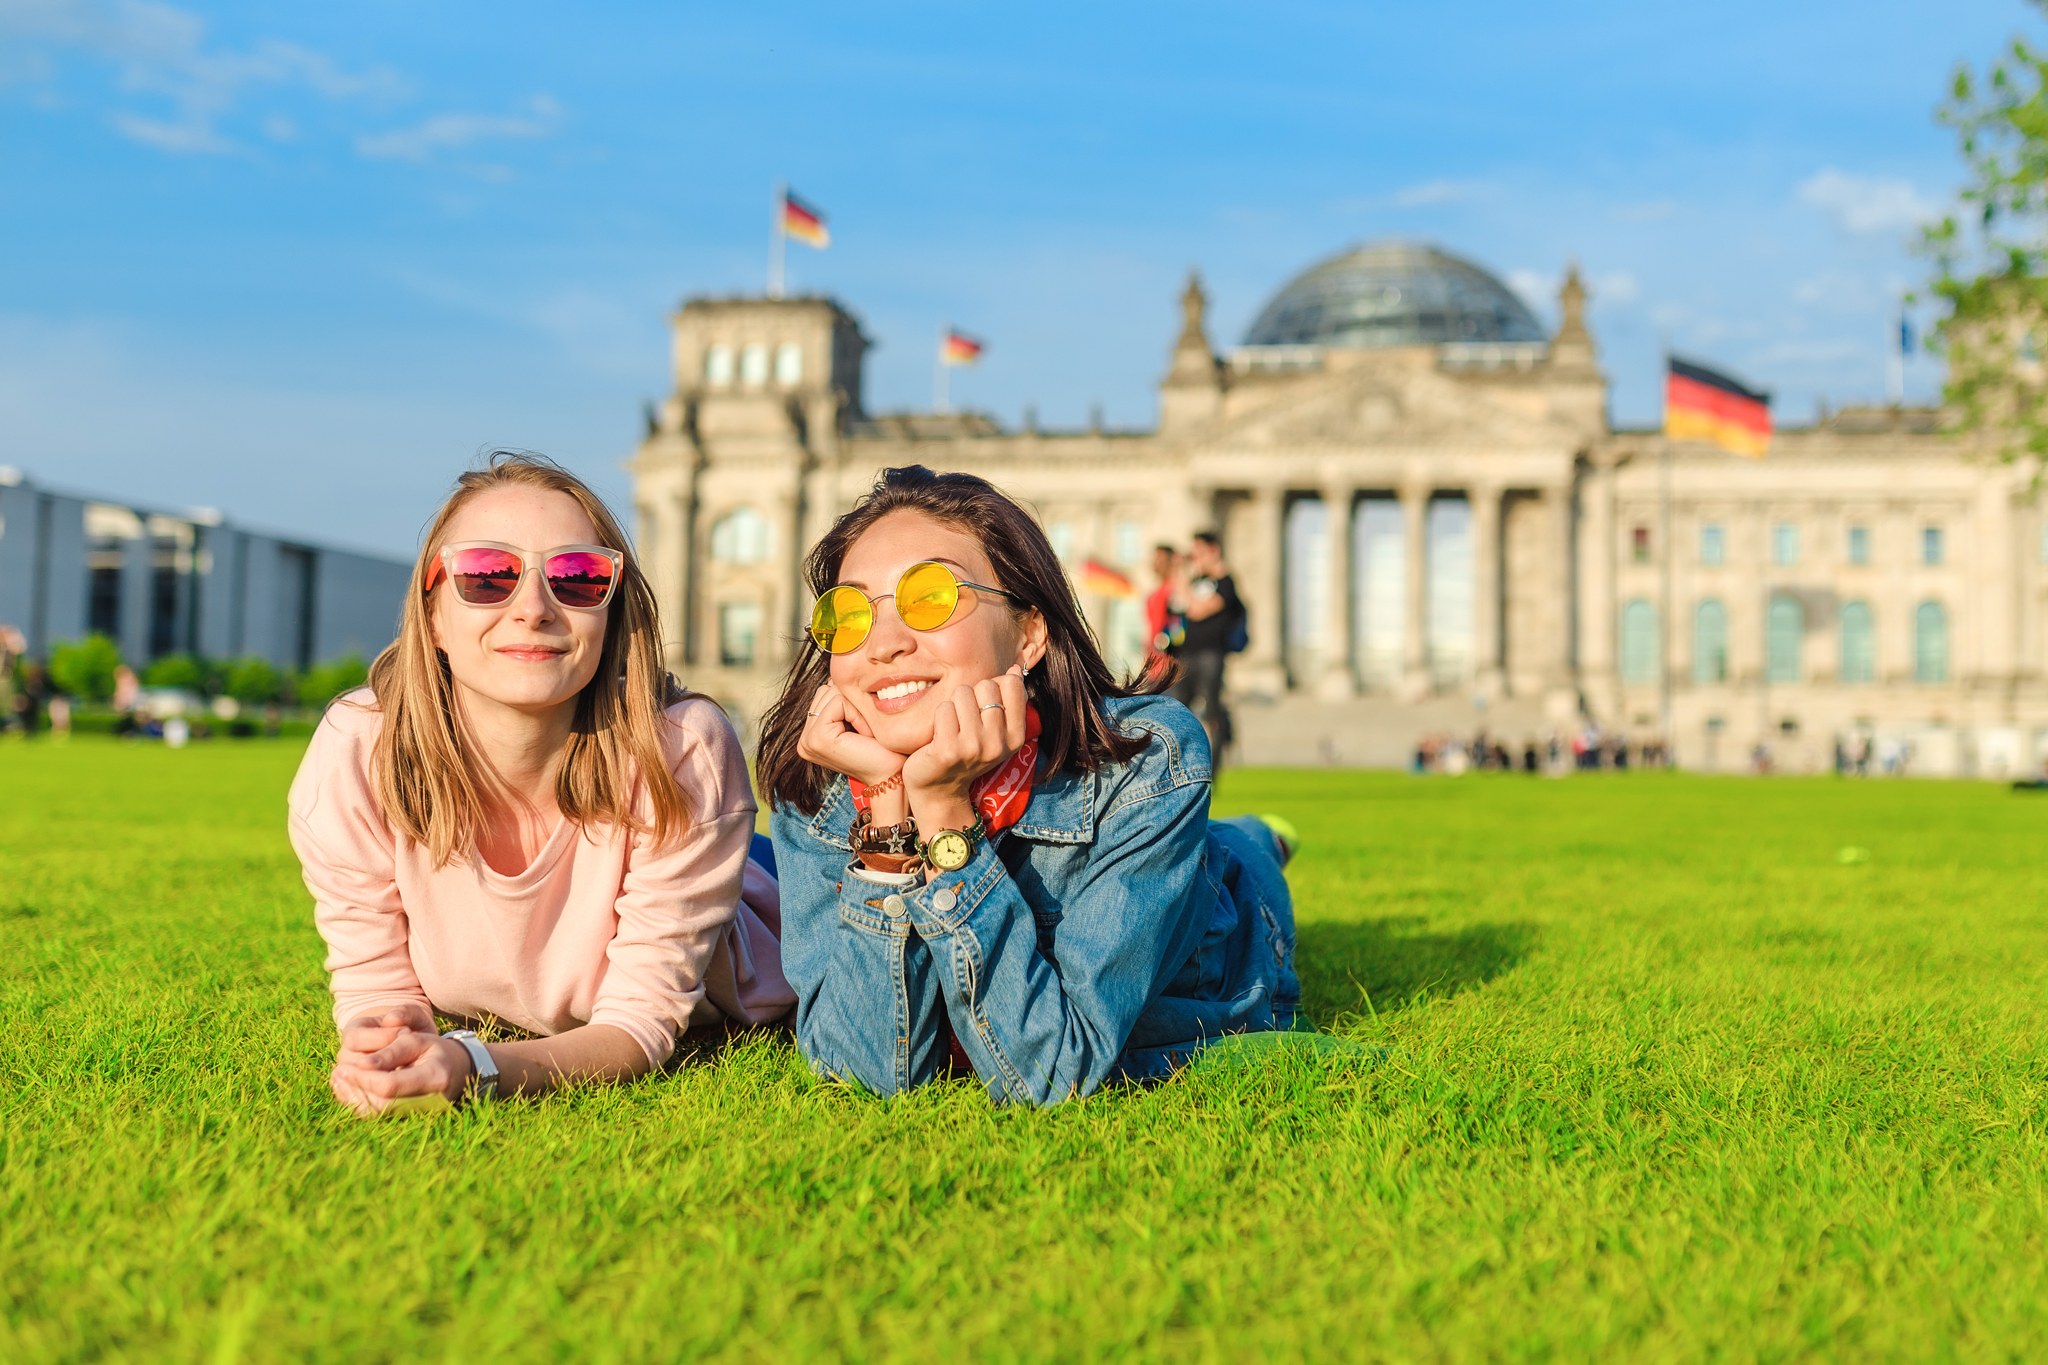 Deutsch als Reisesprache: Sprachliche Vorbereitung auf Ihren Deutschland-Trip - Deutschkenntnisse sind hilfreich, wenn man in ein deutschsprachiges Land reist